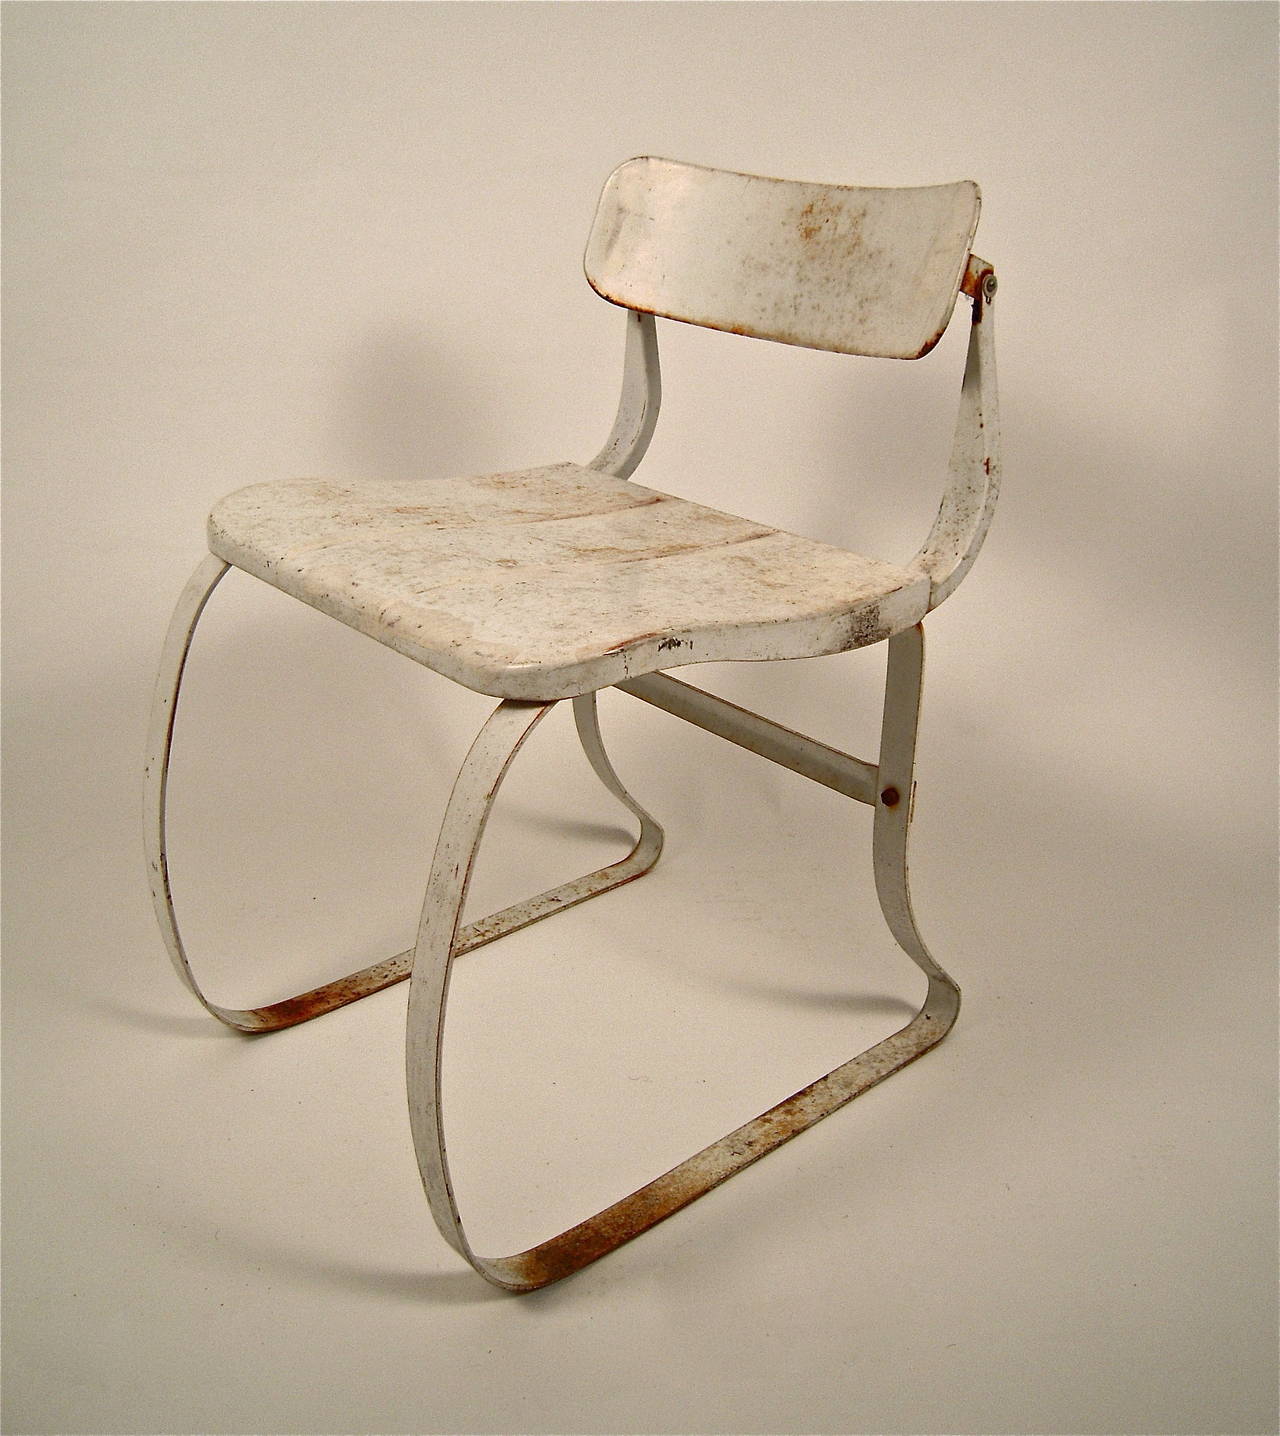 Modern Health Chair Designed by Herman Sperlich for Ironrite, circa 1938-1940